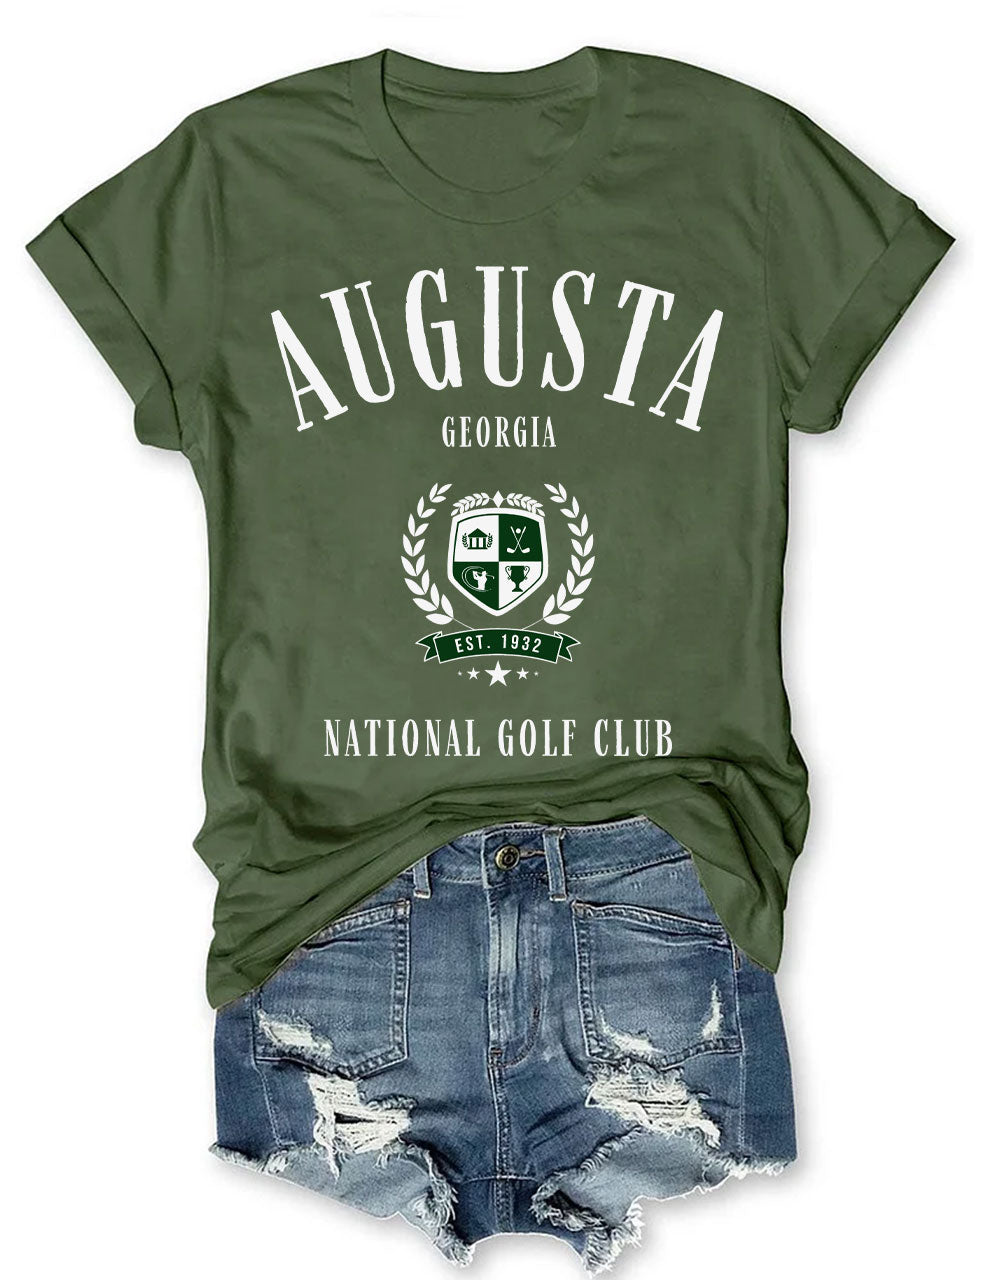 Augusta Georgia Golf Club T-shirt